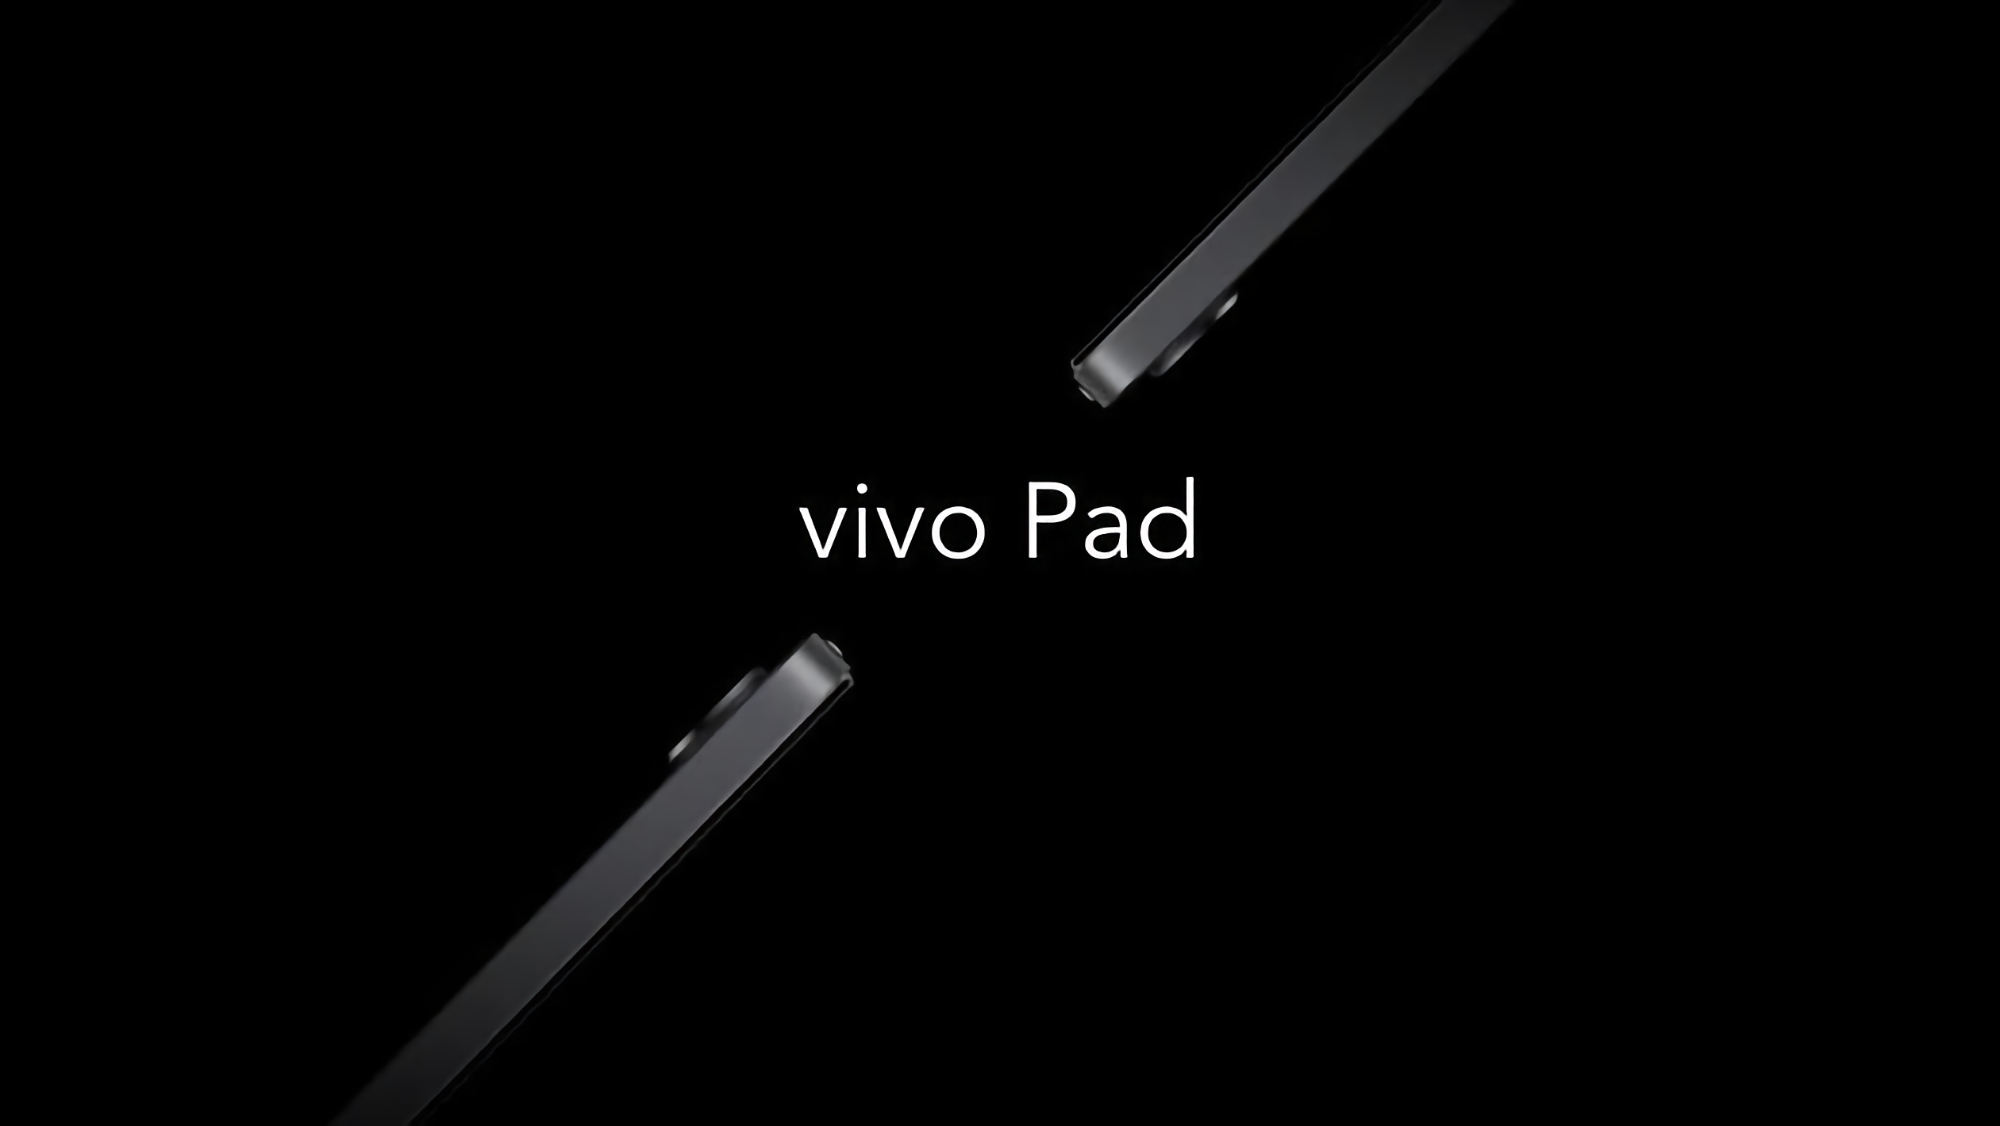 Екран на 120 Гц, чип Snapdragon 870 та швидка зарядка на 44 Вт: у мережі з'явилися характеристики першого планшета Vivo